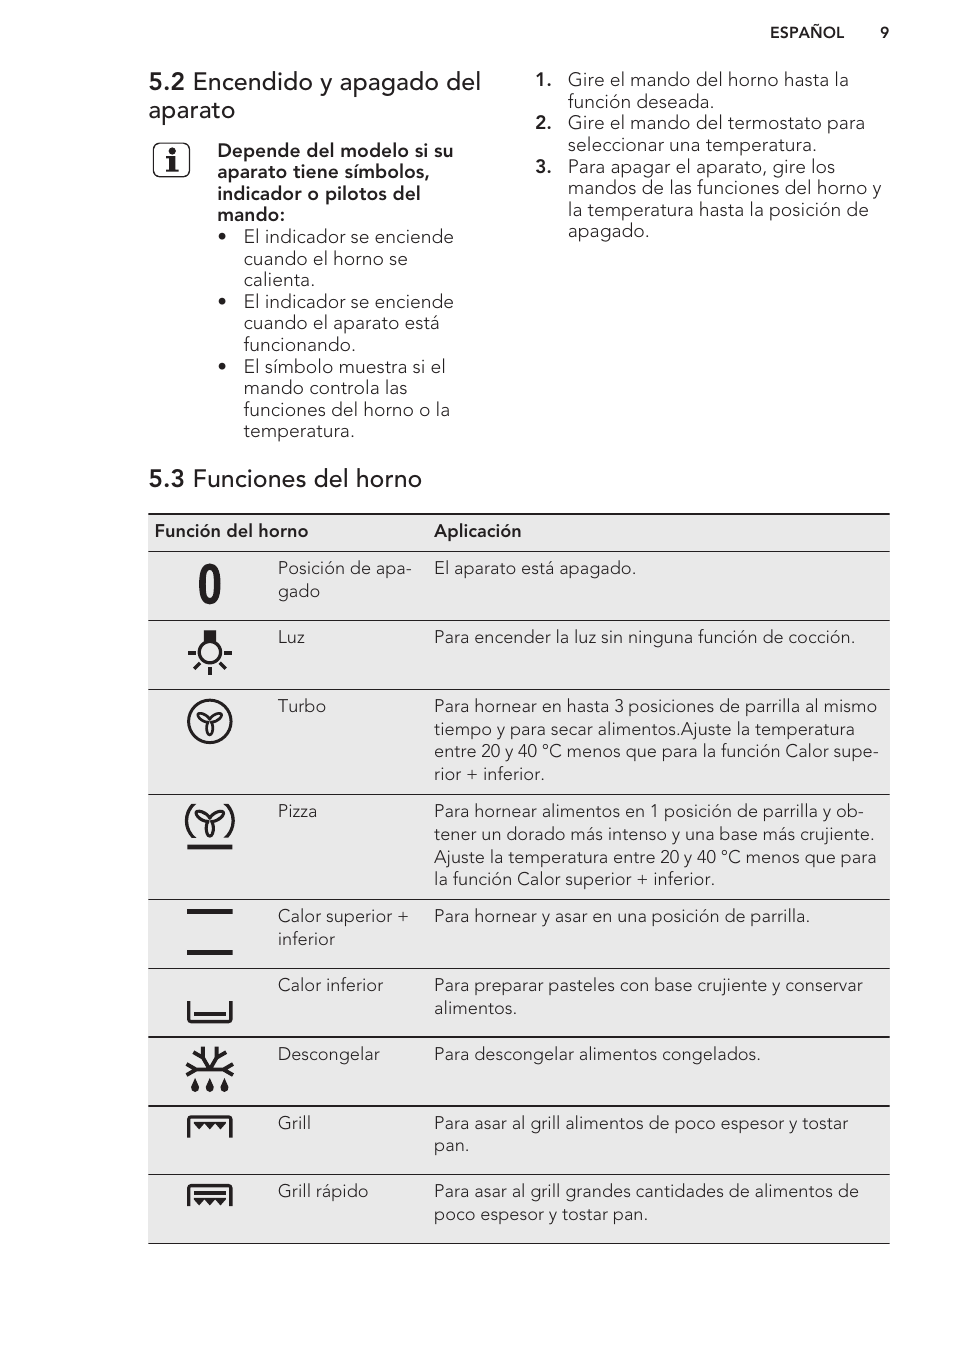 Discriminar Guiño María 2 encendido y apagado del aparato, 3 funciones del horno | AEG BP3013001M  Manual del usuario | Página 9 / 36